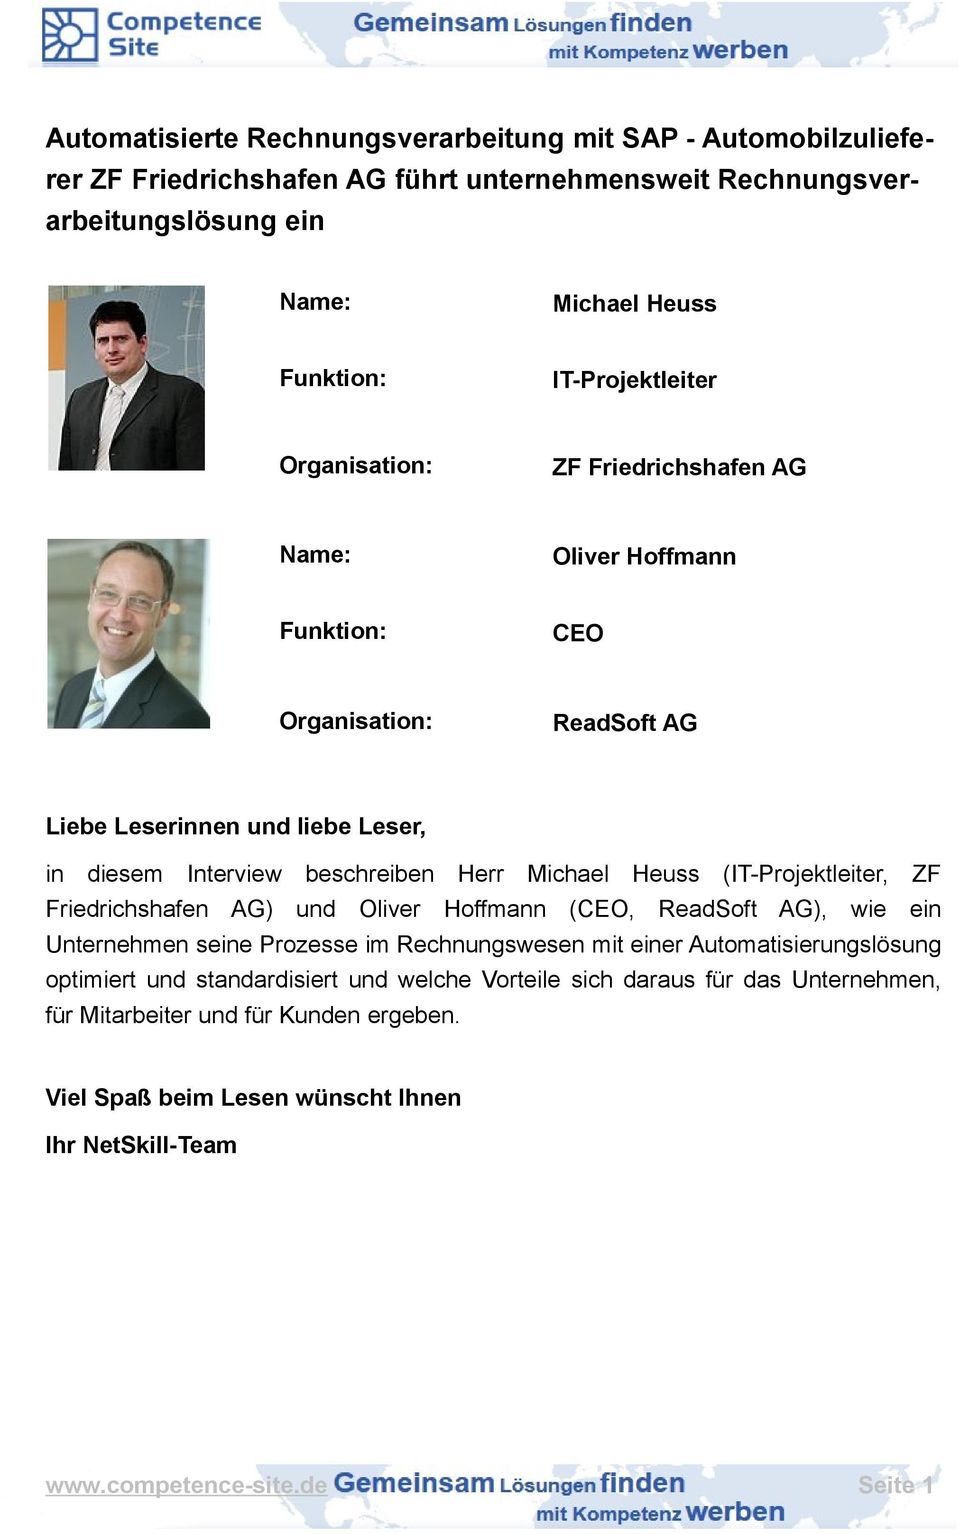 Michael Heuss (IT-Projektleiter, ZF Friedrichshafen AG) und Oliver Hoffmann (CEO, ReadSoft AG), wie ein Unternehmen seine Prozesse im Rechnungswesen mit einer Automatisierungslösung